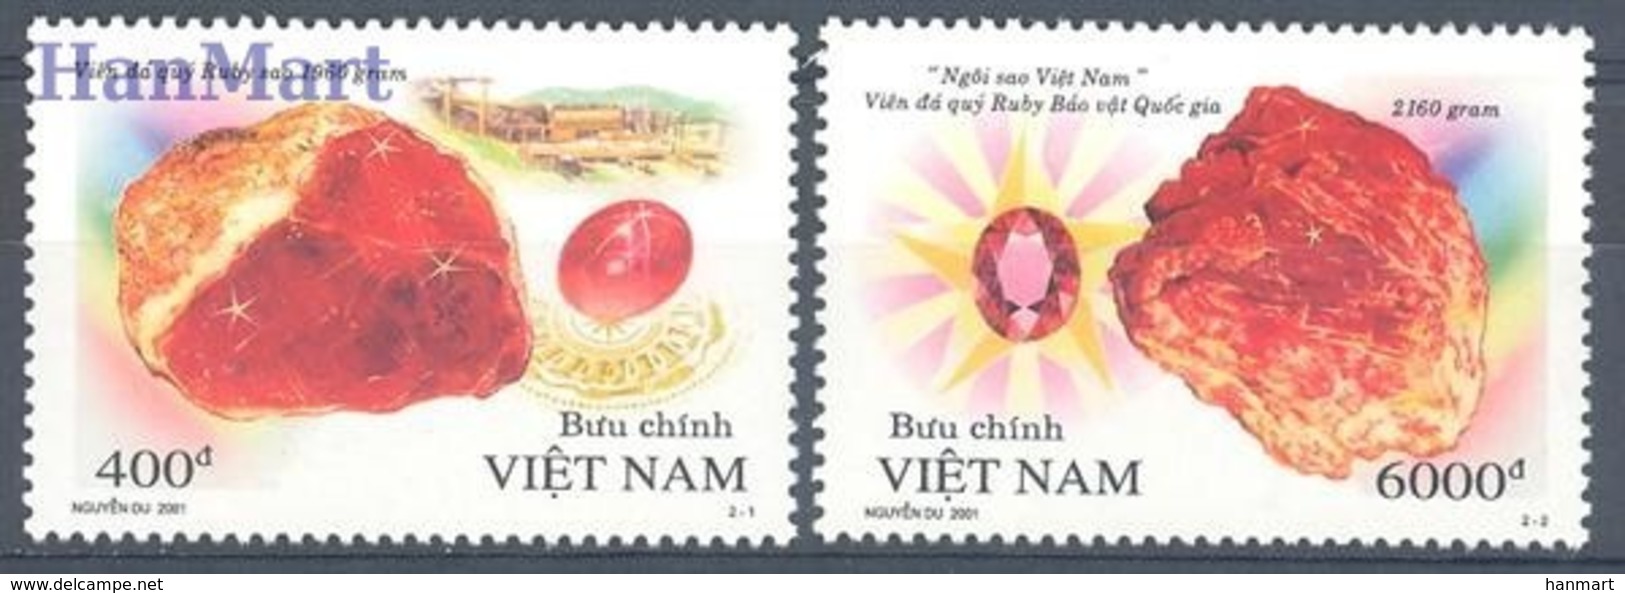 Vietnam 2001 Mi 3141-3142 MNH ( ZS8 VTN3141-3142dav132 ) - Vietnam